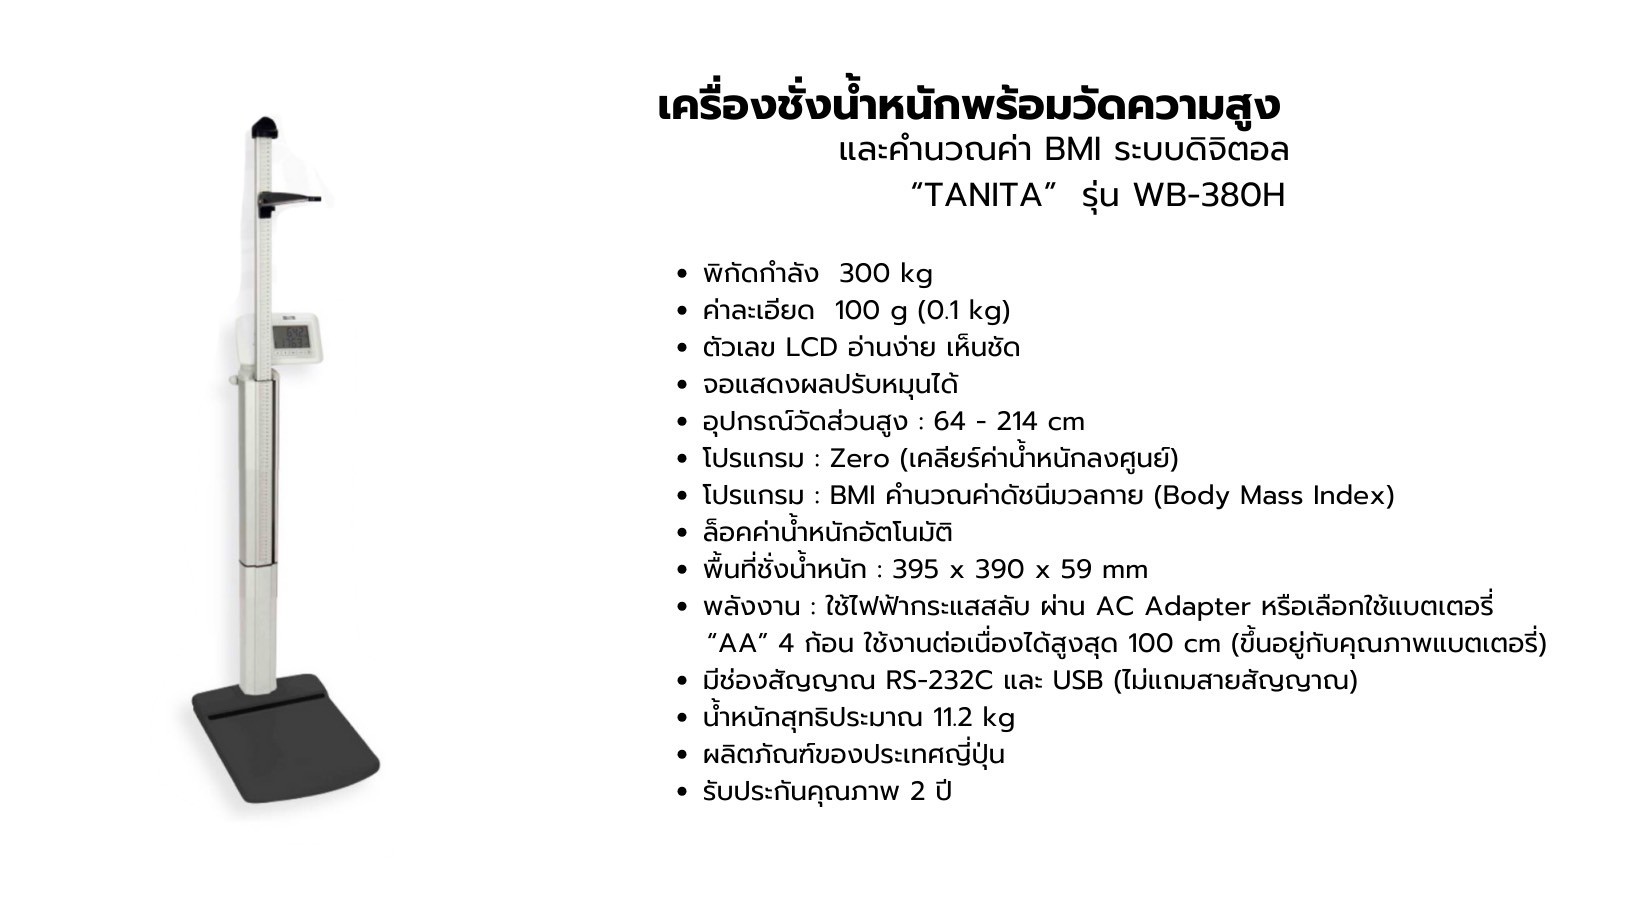 เครื่องชั่งน้ำหนักพร้อมวัดความสูง และคำนวณค่า BMI ระบบดิจิตอล TANITA รุ่น WB-380H